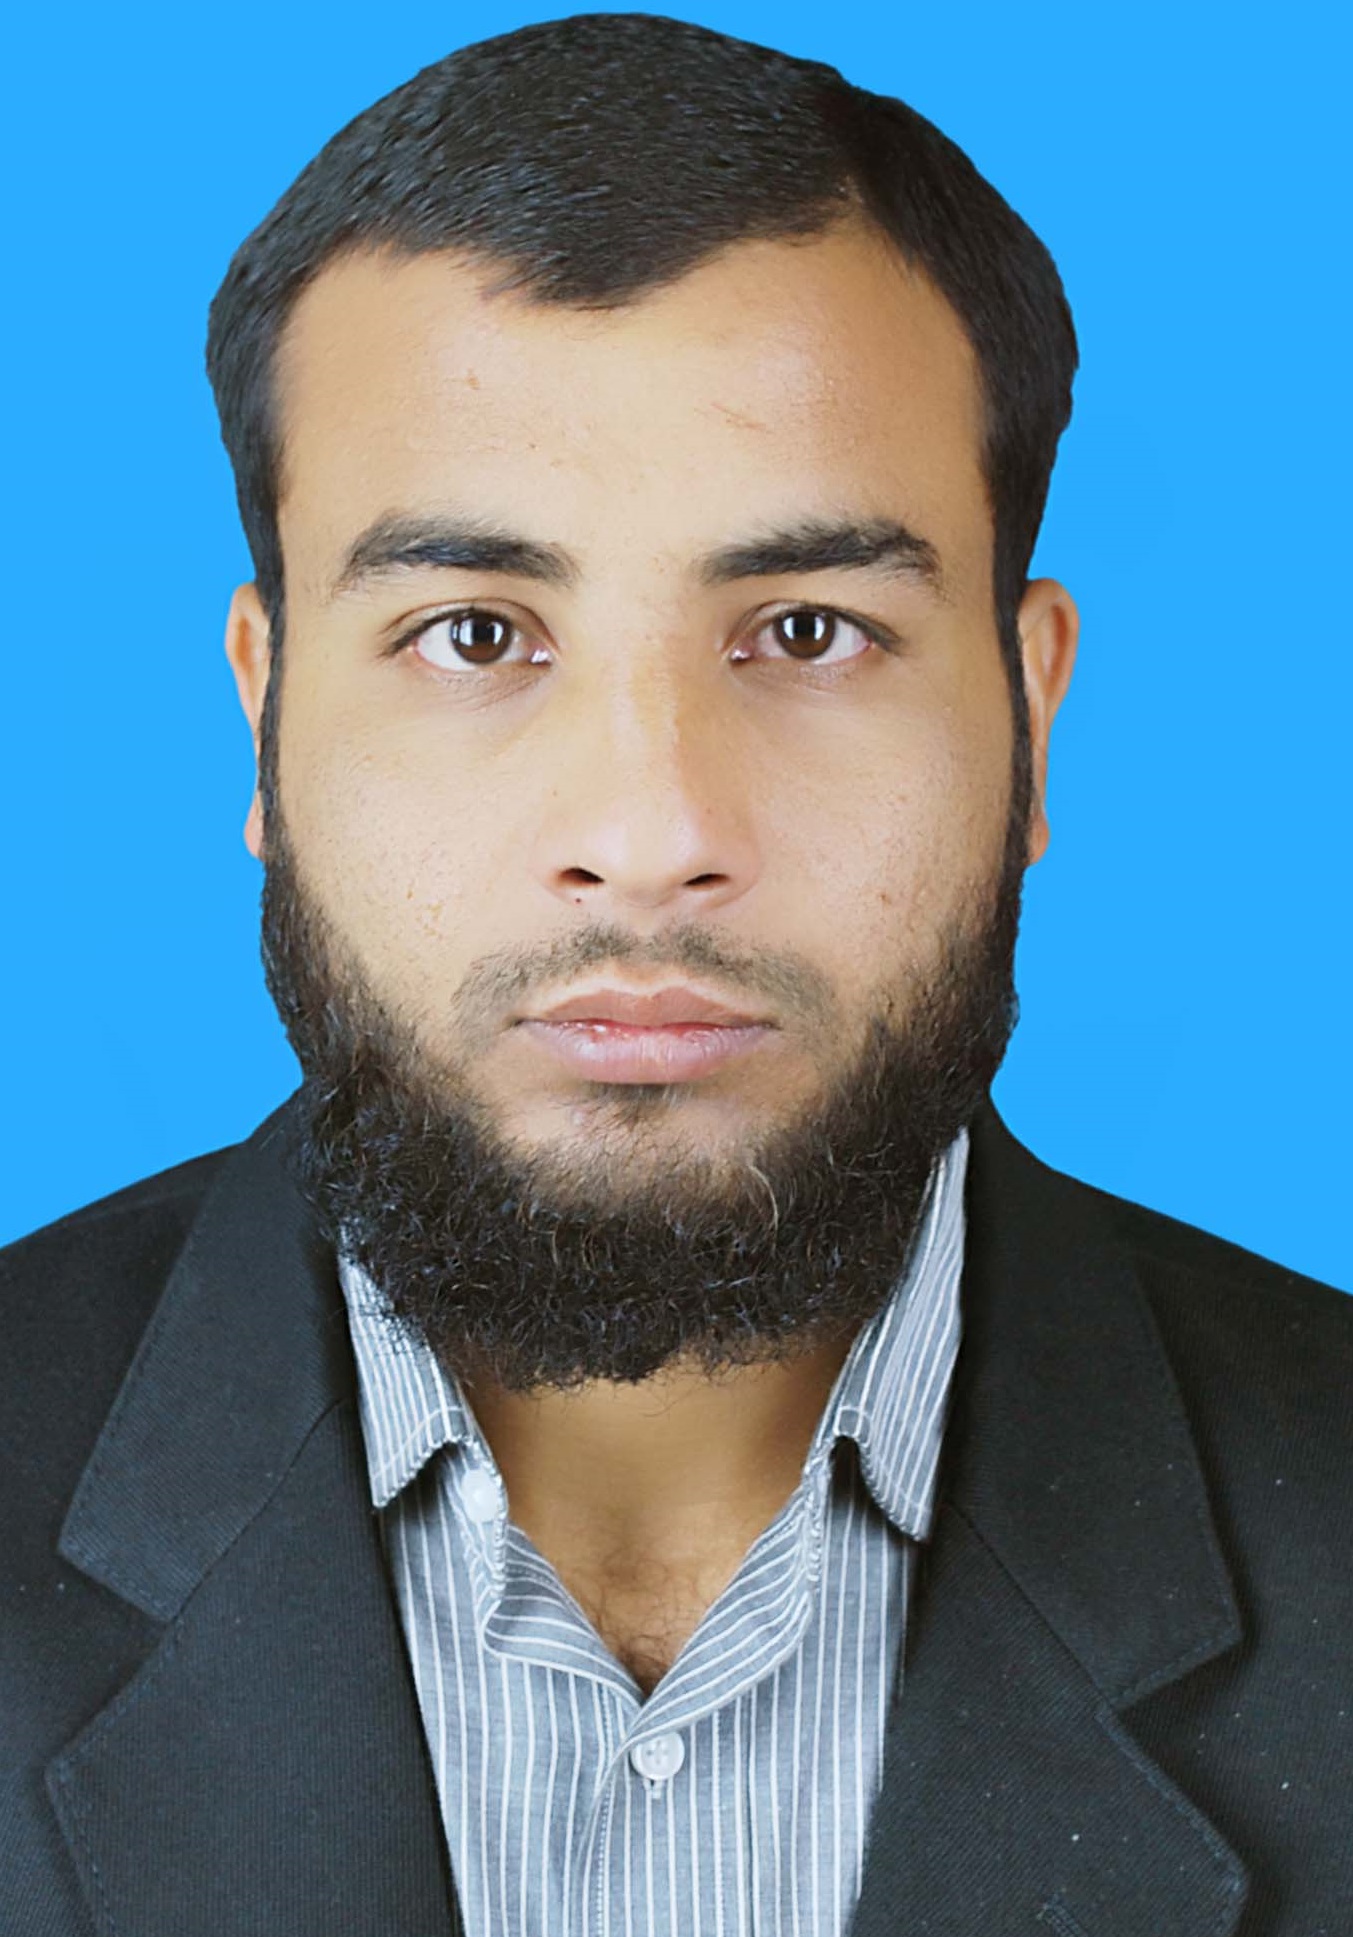 Mr. Irshad Habib